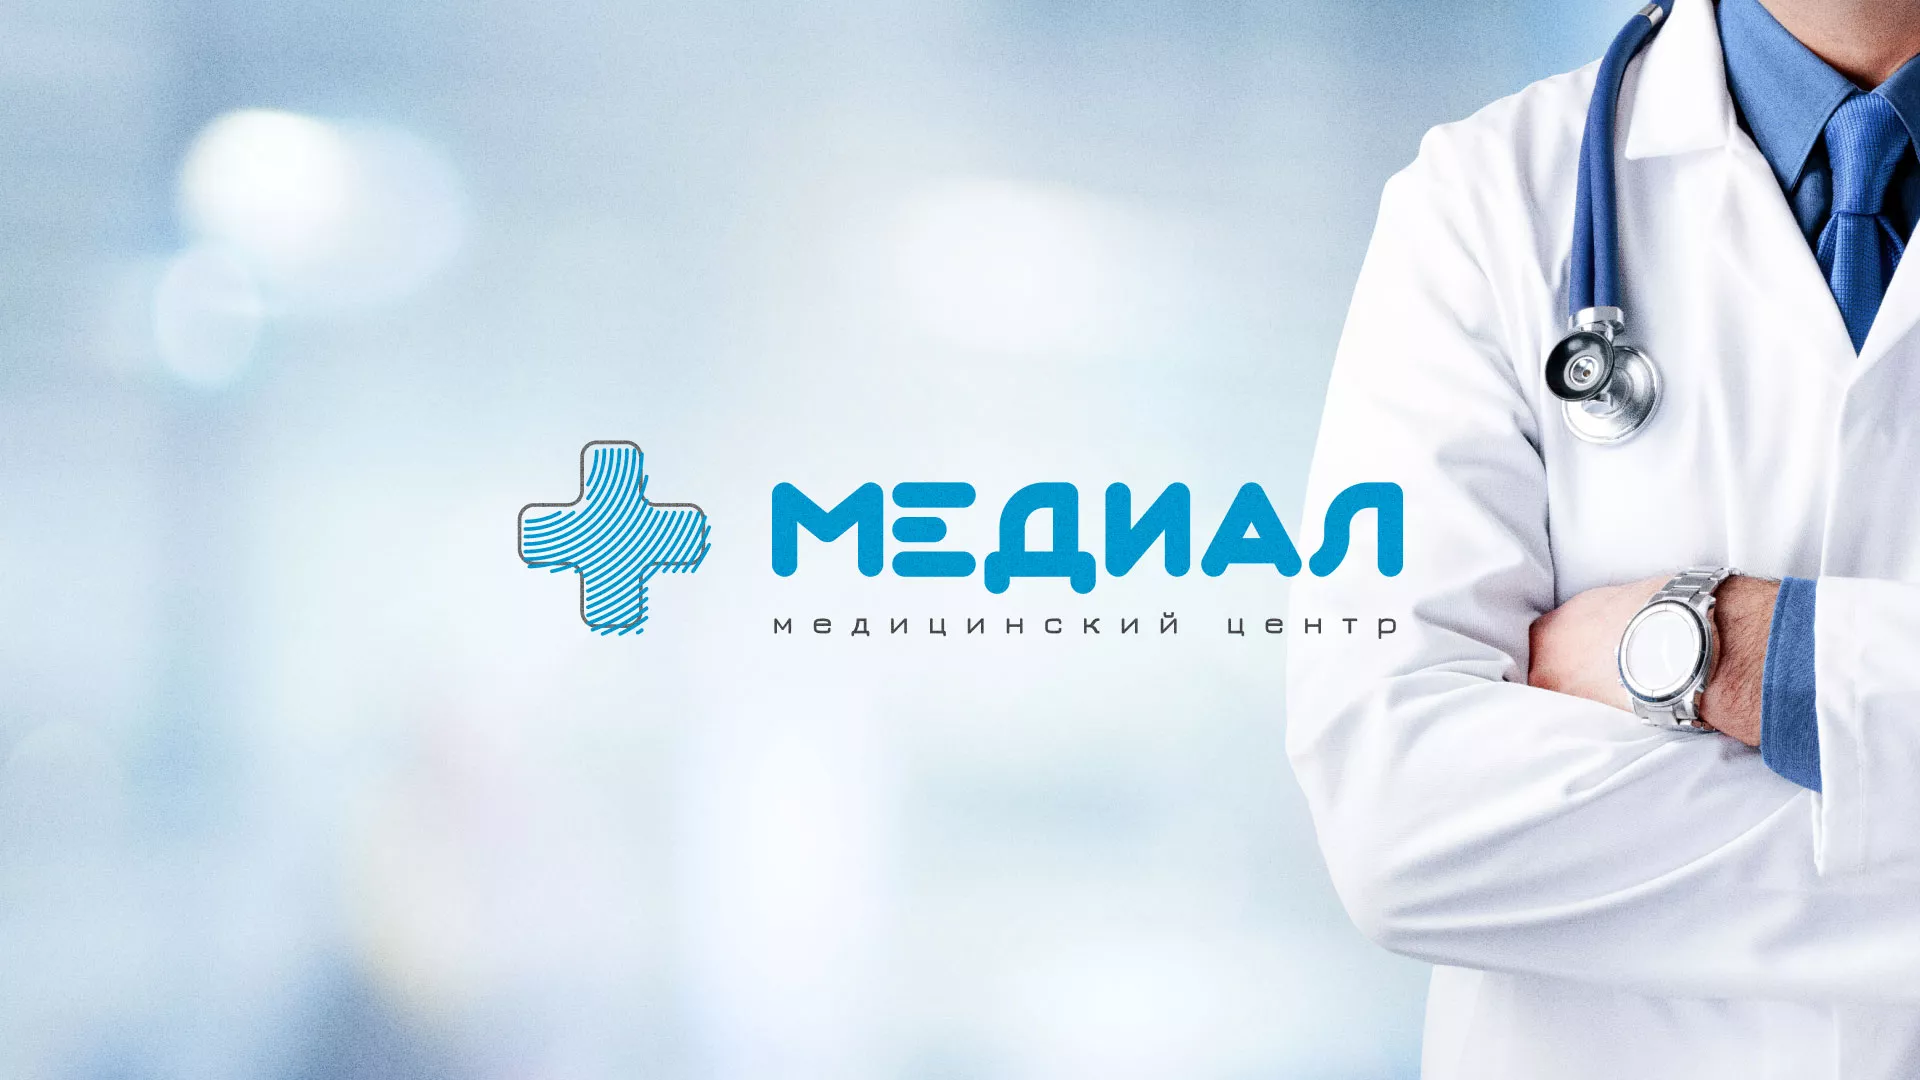 Создание сайта для медицинского центра «Медиал» в Твери